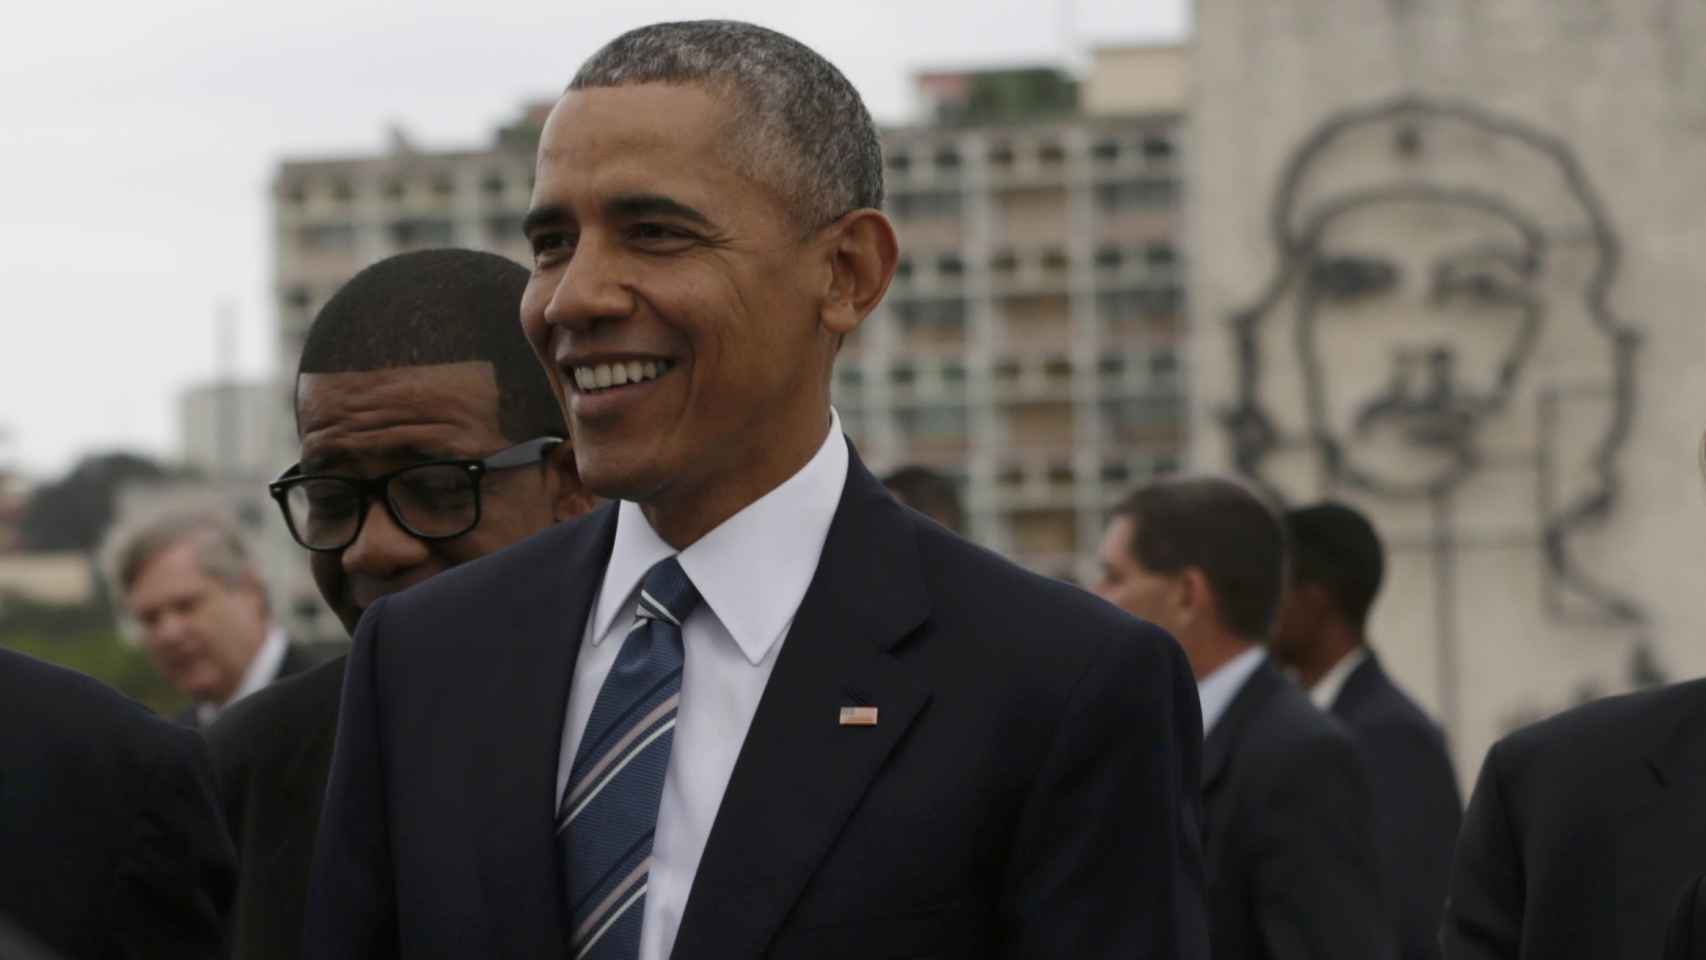 Obama, frente a la imagen del Che Guevara en la cubana plaza de la Revolución.